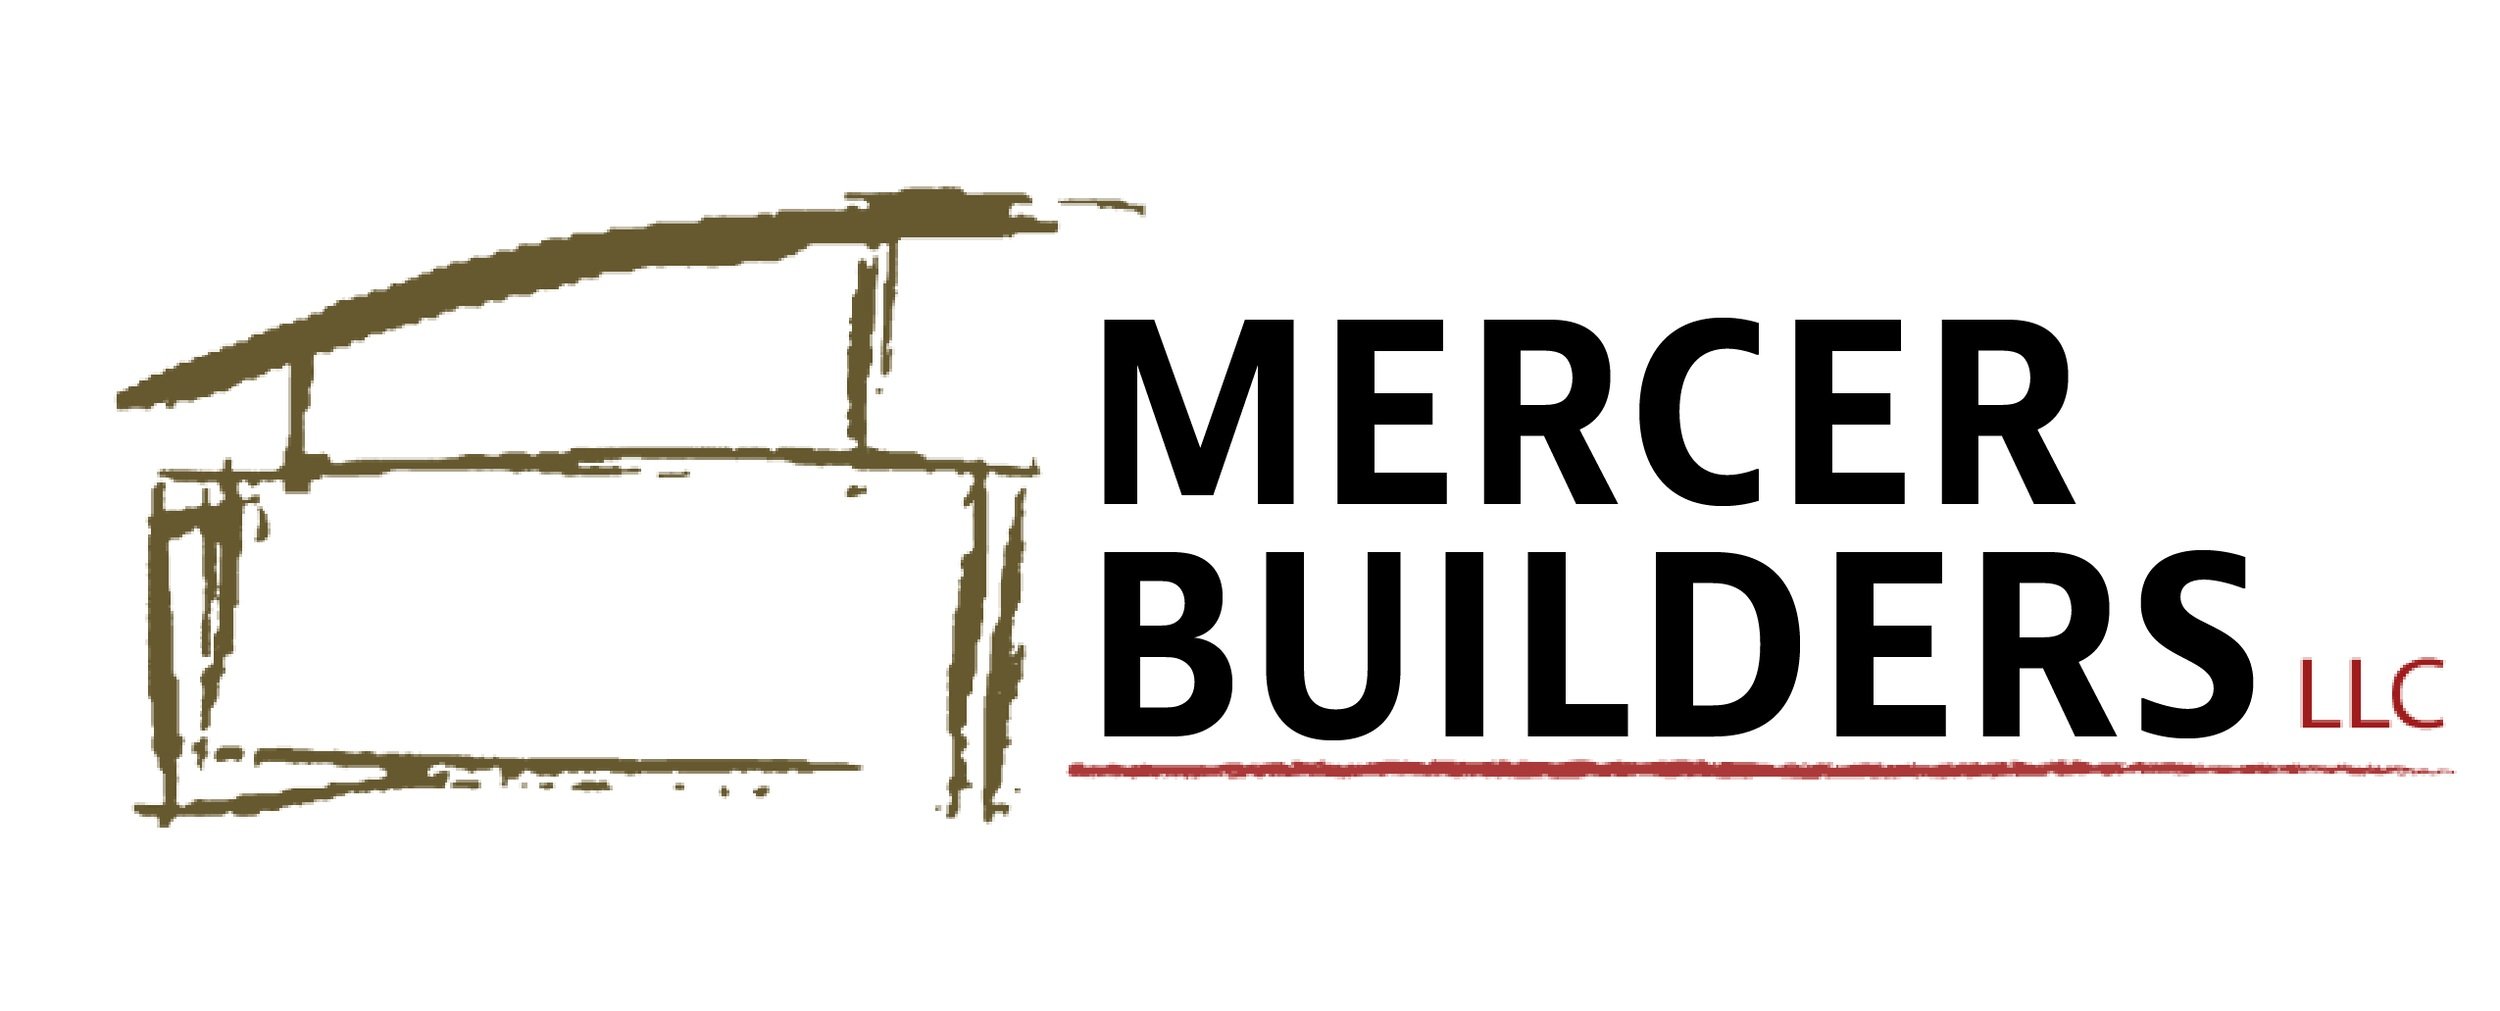 Mercer Builders LLC